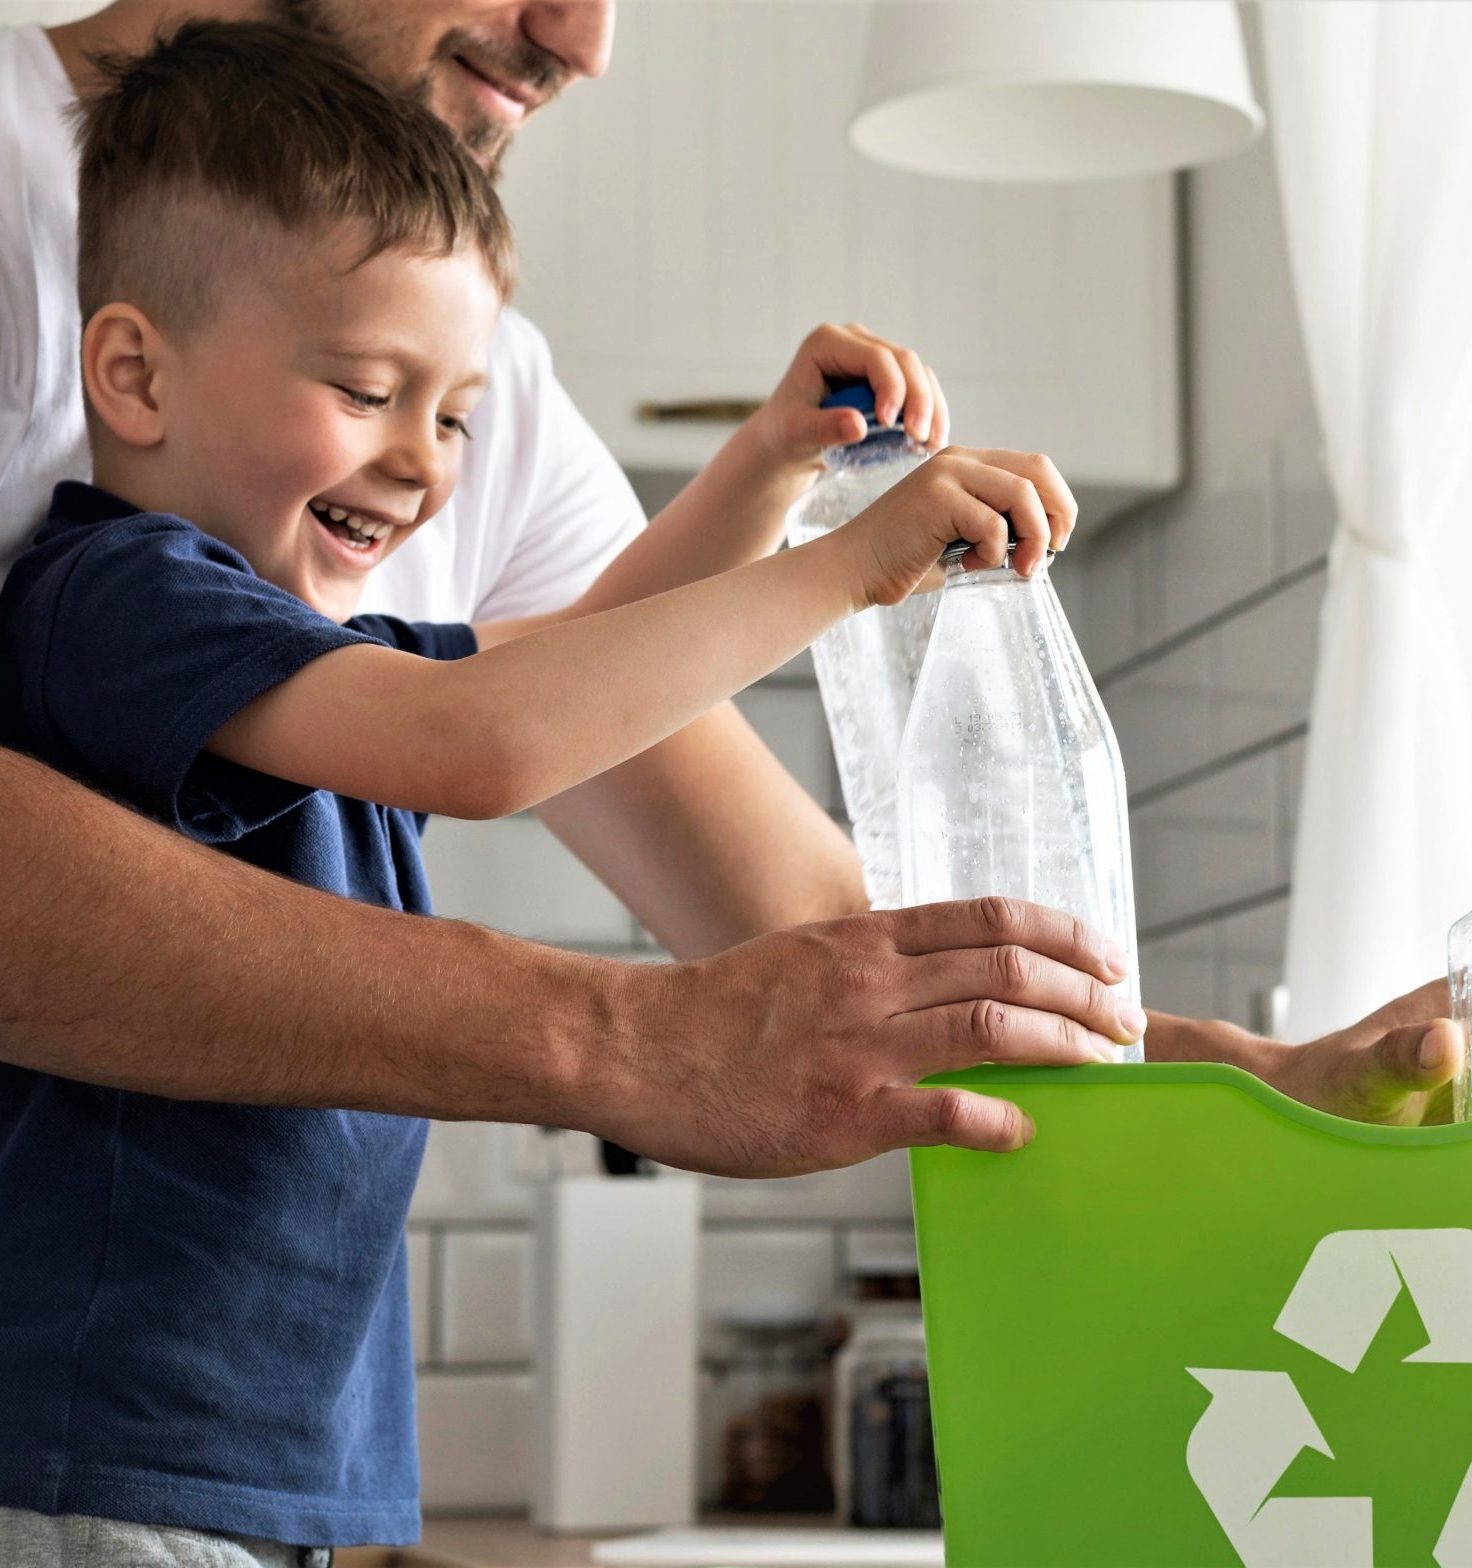 Criança recicla com ajuda de adulto